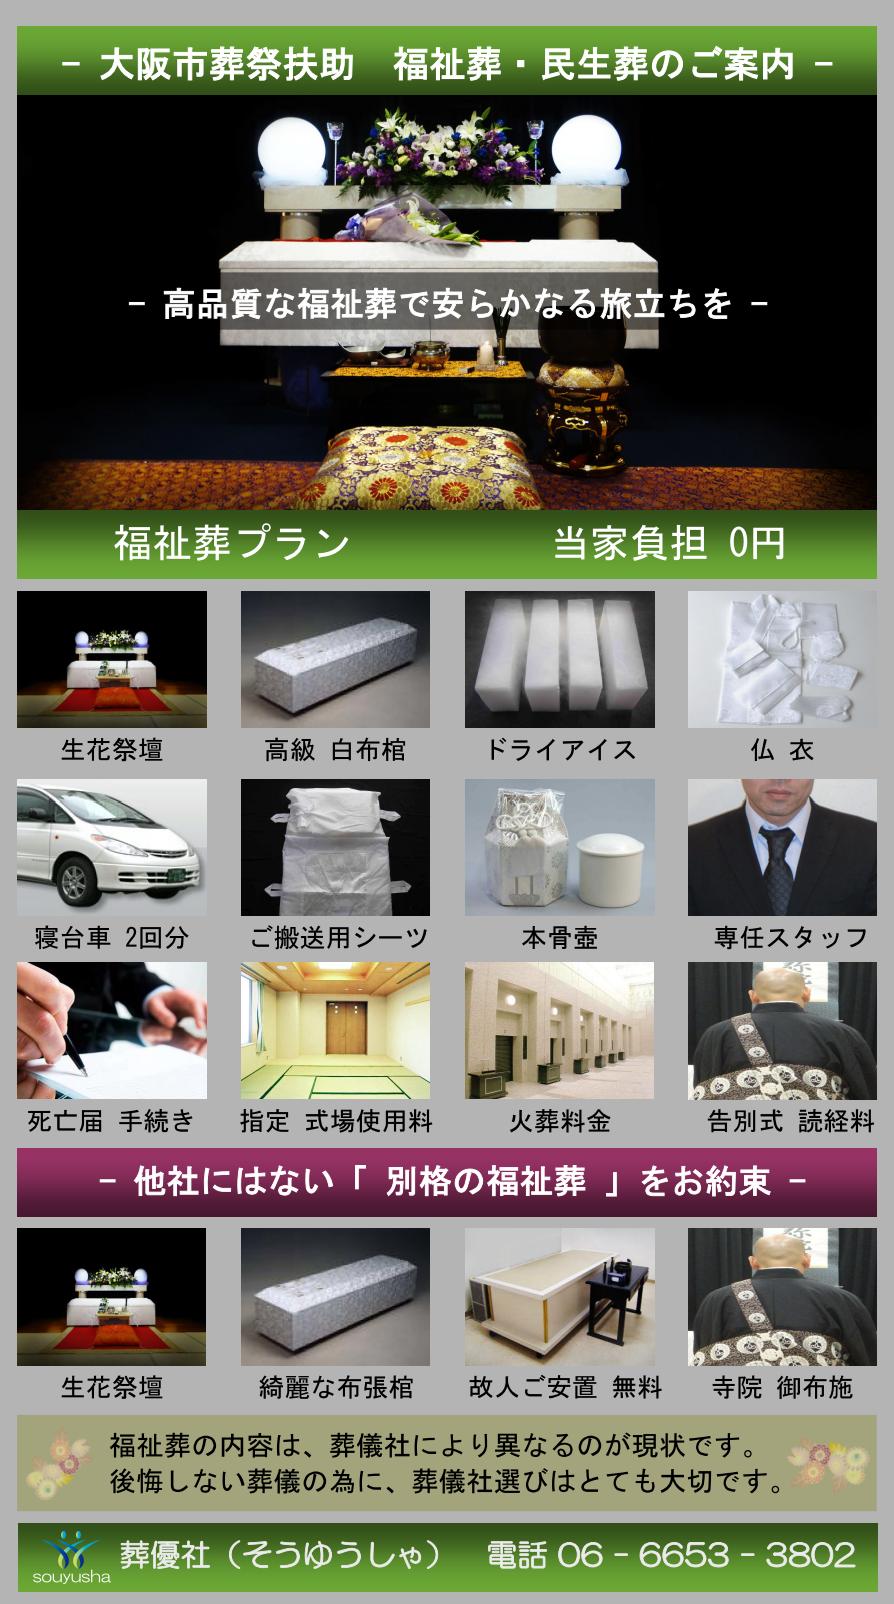 大阪市 東成区での福祉葬、生活保護者のお葬式のご案内